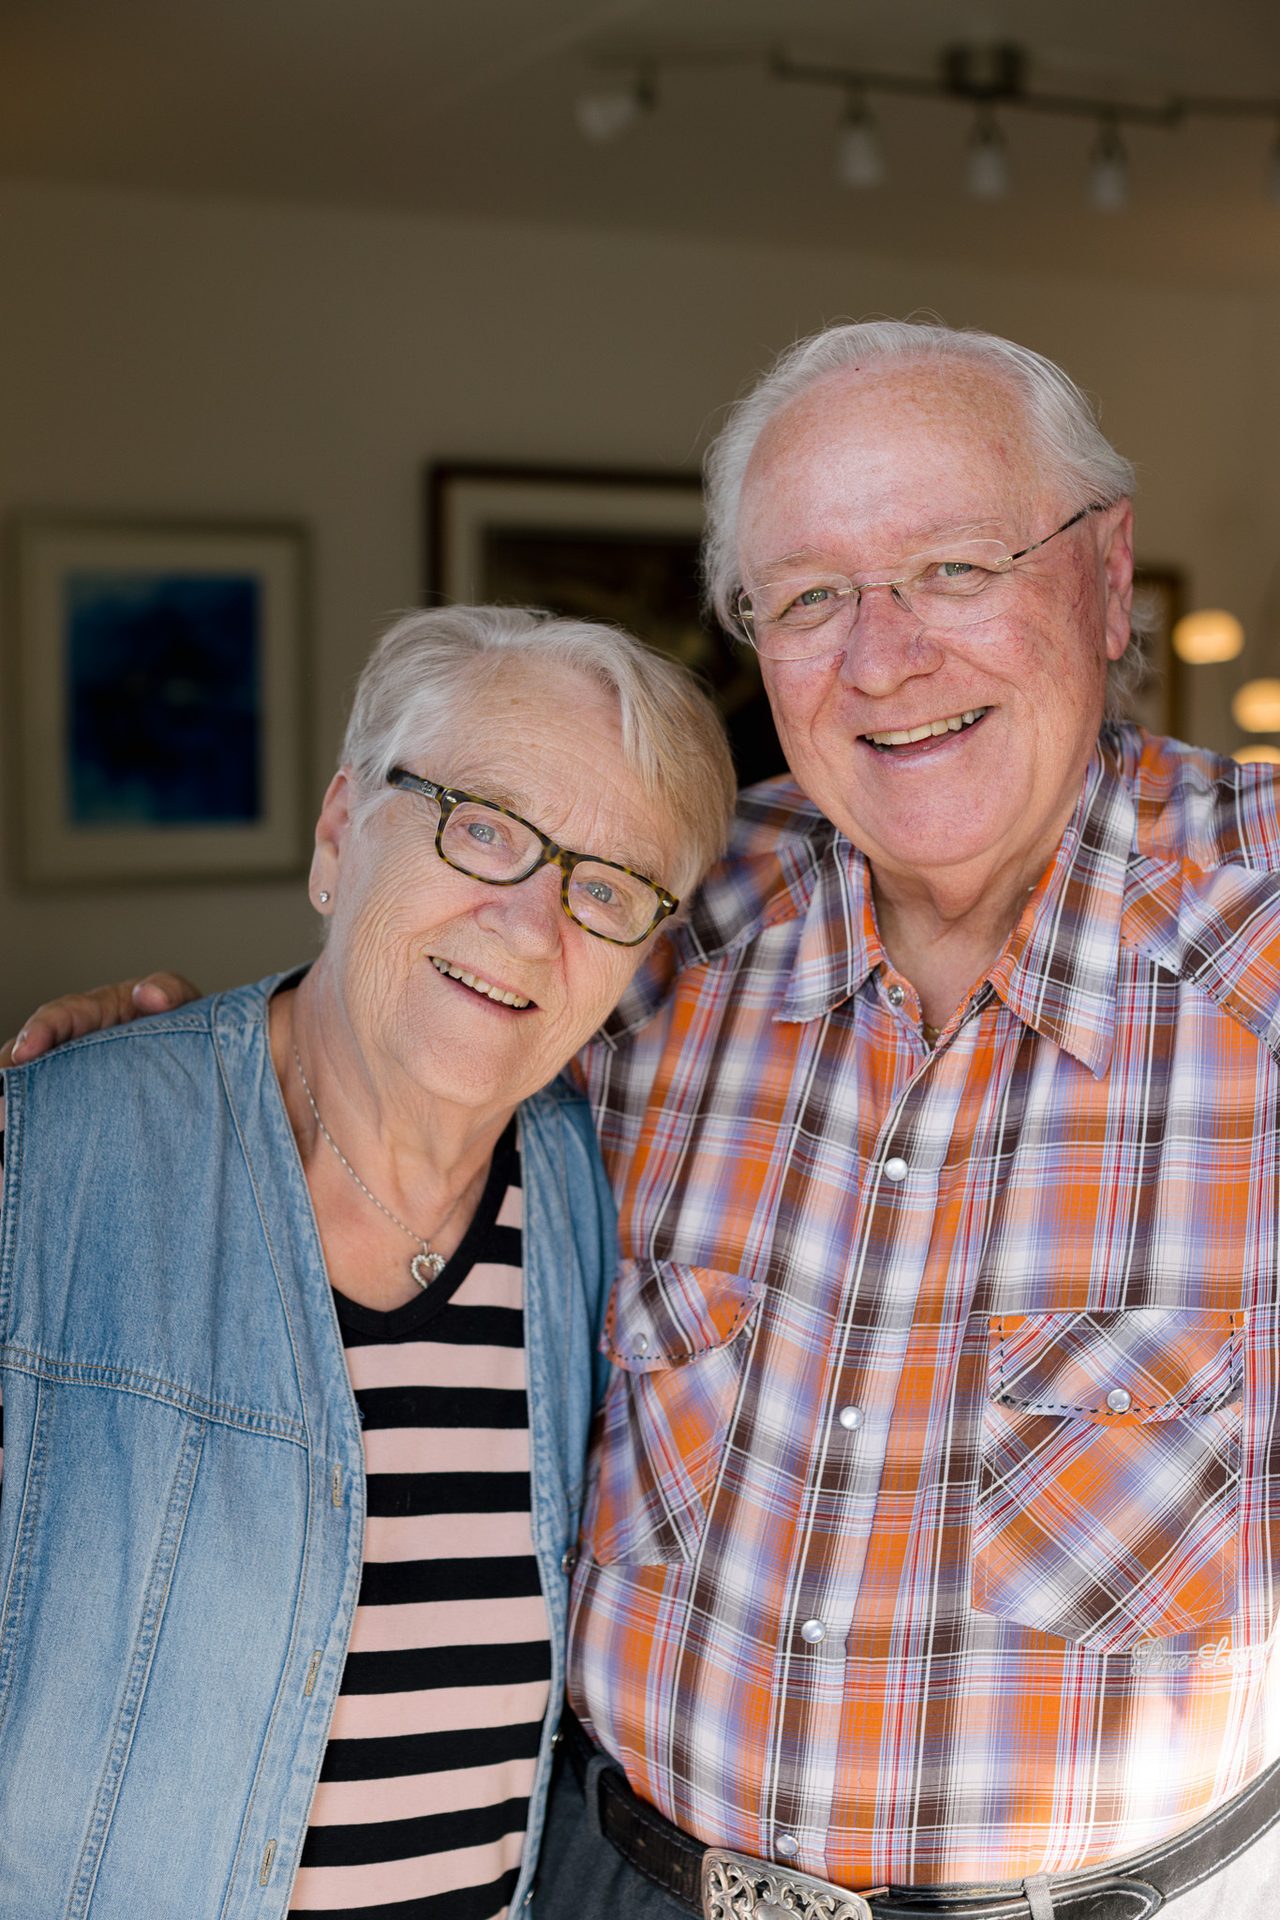 et eldre par med hvitt h&#xE5;r, briller og m&#xF8;nstret skjorte st&#xE5;r sammen og smiler inn i kameraet. 